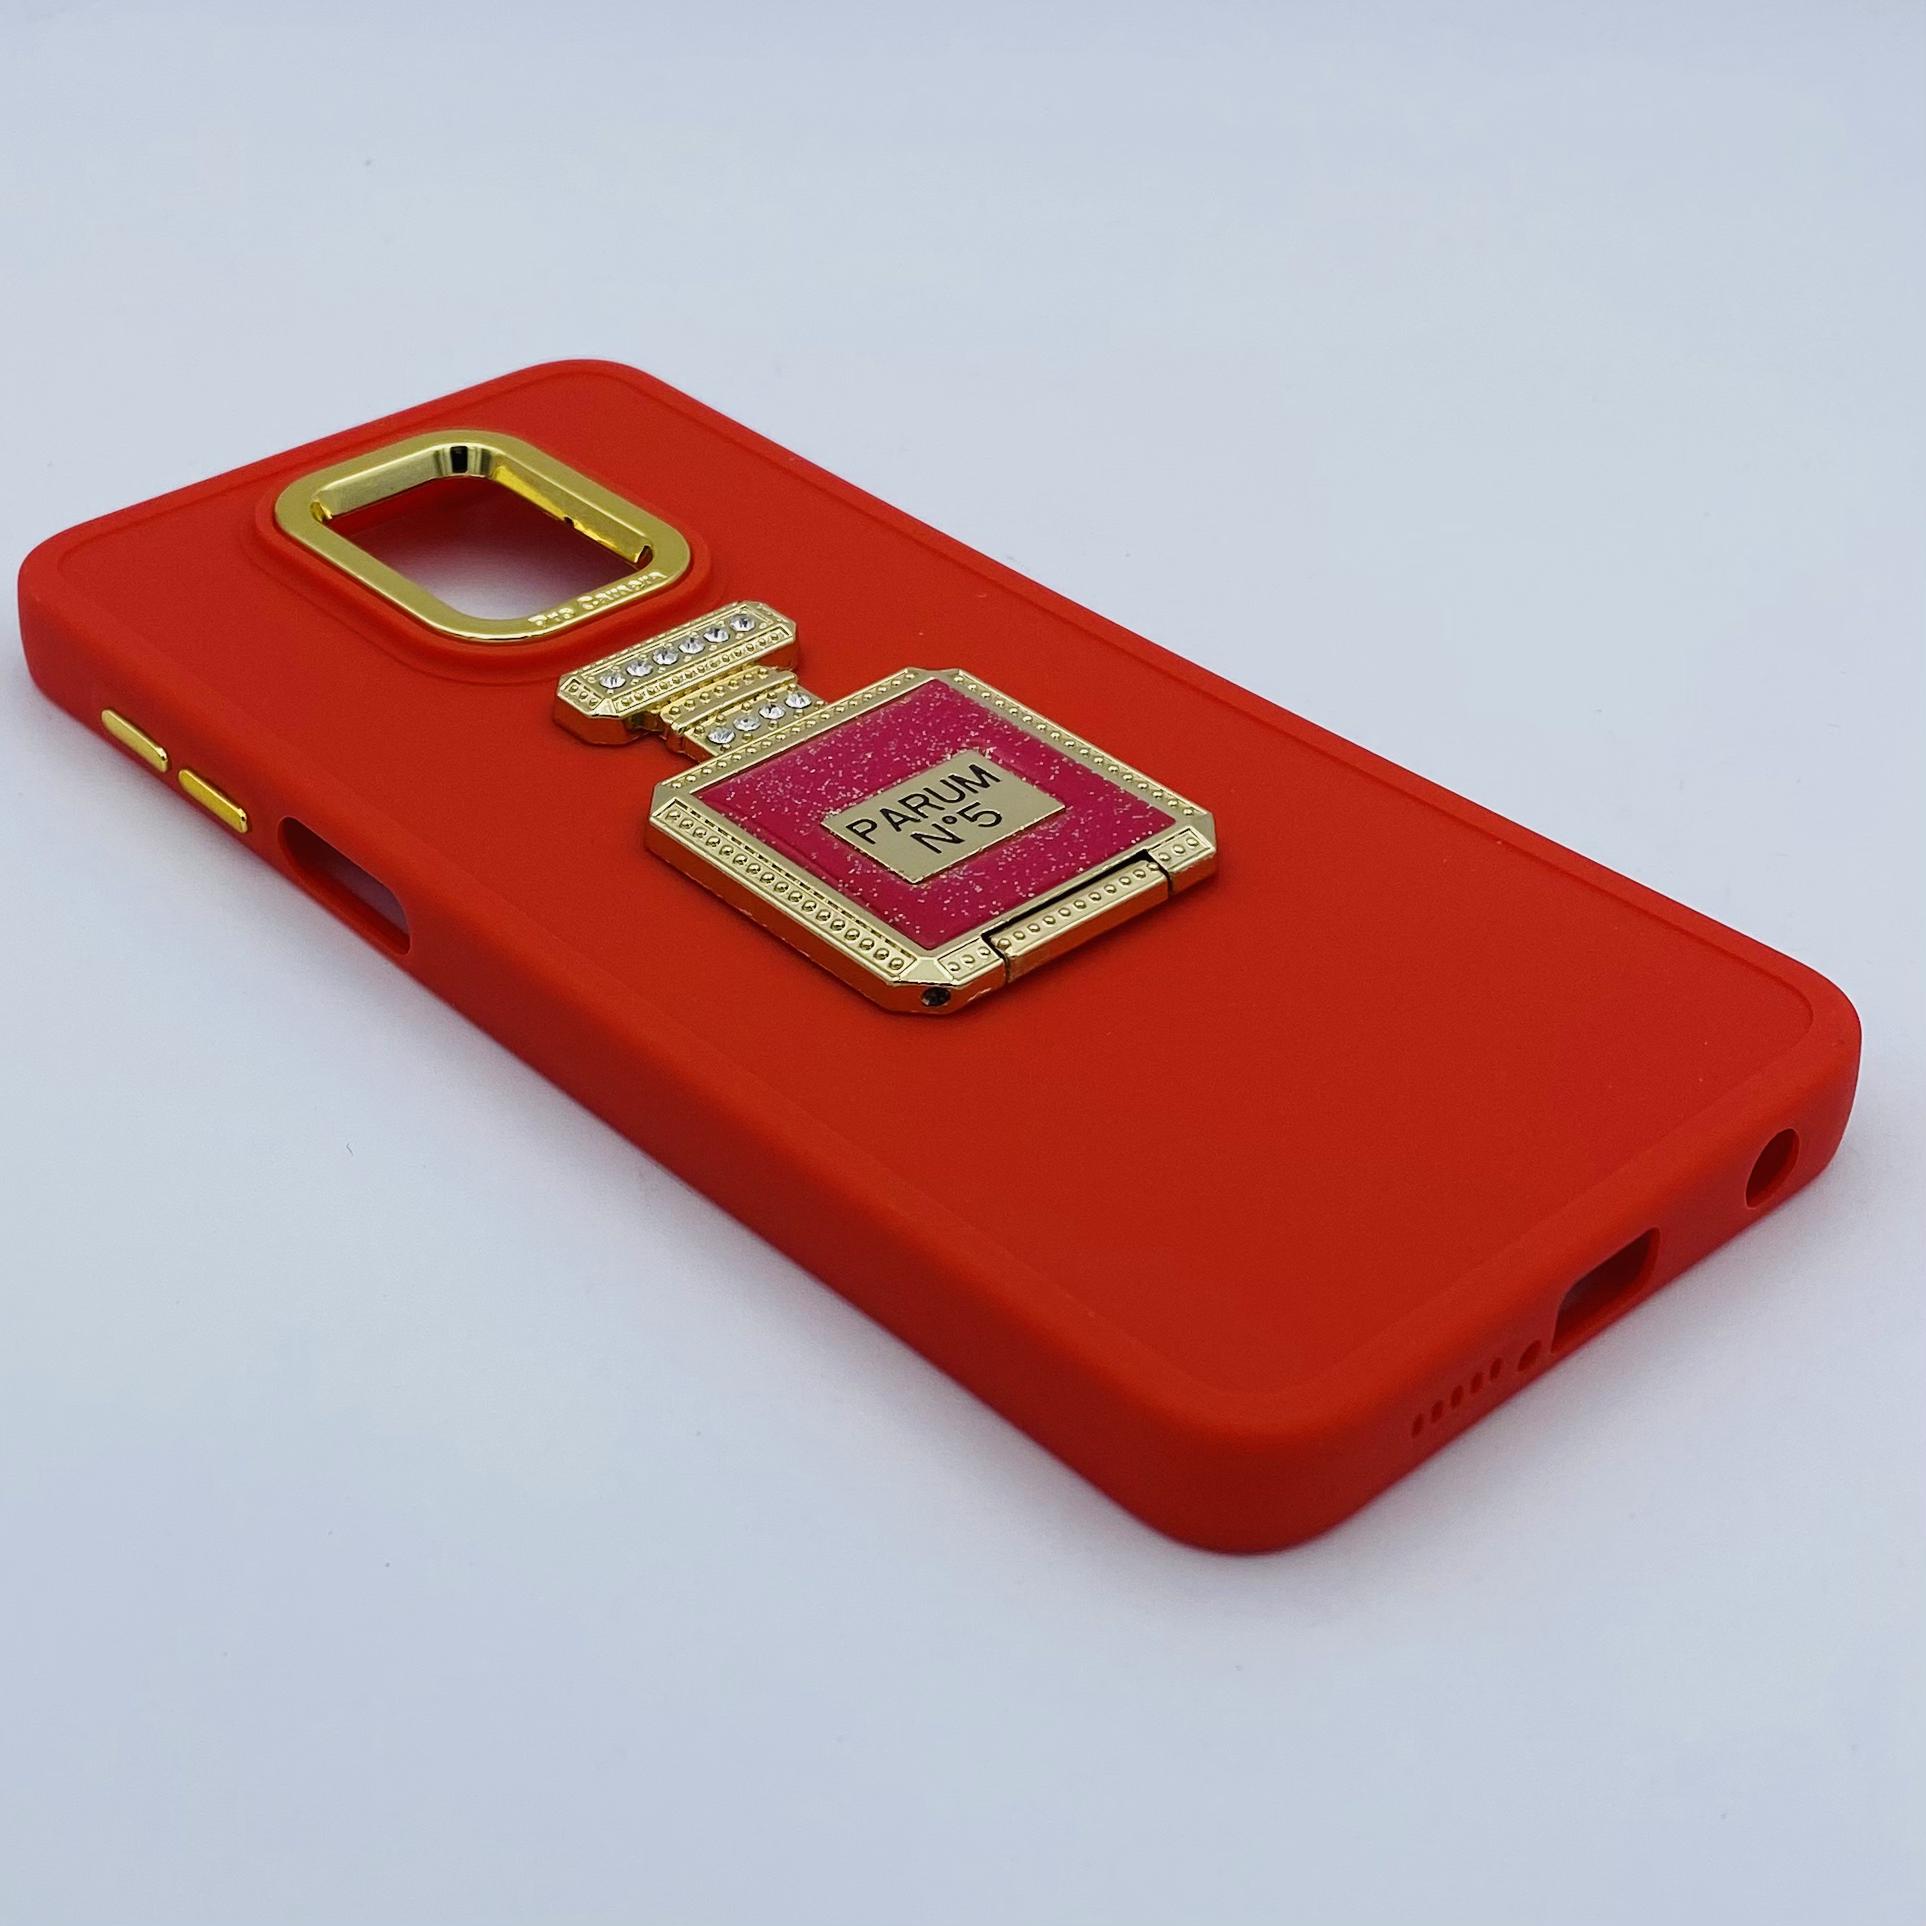 مشخصات و خرید قاب گوشی Redmi Note 9S - Redmi Note 9 Pro شیائومی اورجینال لاکچری PRO CAMERA طرح سیلیکونی محافظ متال پاپ سوکت آینه ای نگین دار داخل مخمل محافظ لنز دار رنگ قرمز ، خرید قاب گوشی Redmi Note 9S - Redmi Note 9 Pro شیائومی اورجینال لاکچری PRO CAMERA طرح سیلیکونی محافظ متال پاپ سوکت آینه ای نگین دار داخل مخمل محافظ لنز دار رنگ قرمز از فروشگاه سام فون ، قیمت قاب گوشی Redmi Note 9S - Redmi Note 9 Pro شیائومی اورجینال لاکچری PRO CAMERA طرح سیلیکونی محافظ متال پاپ سوکت آینه ای نگین دار داخل مخمل محافظ لنز دار رنگ قرمز ، ارزانترین قیمت قاب گوشی Redmi Note 9S - Redmi Note 9 Pro شیائومی اورجینال لاکچری PRO CAMERA طرح سیلیکونی محافظ متال پاپ سوکت آینه ای نگین دار داخل مخمل محافظ لنز دار رنگ قرمز